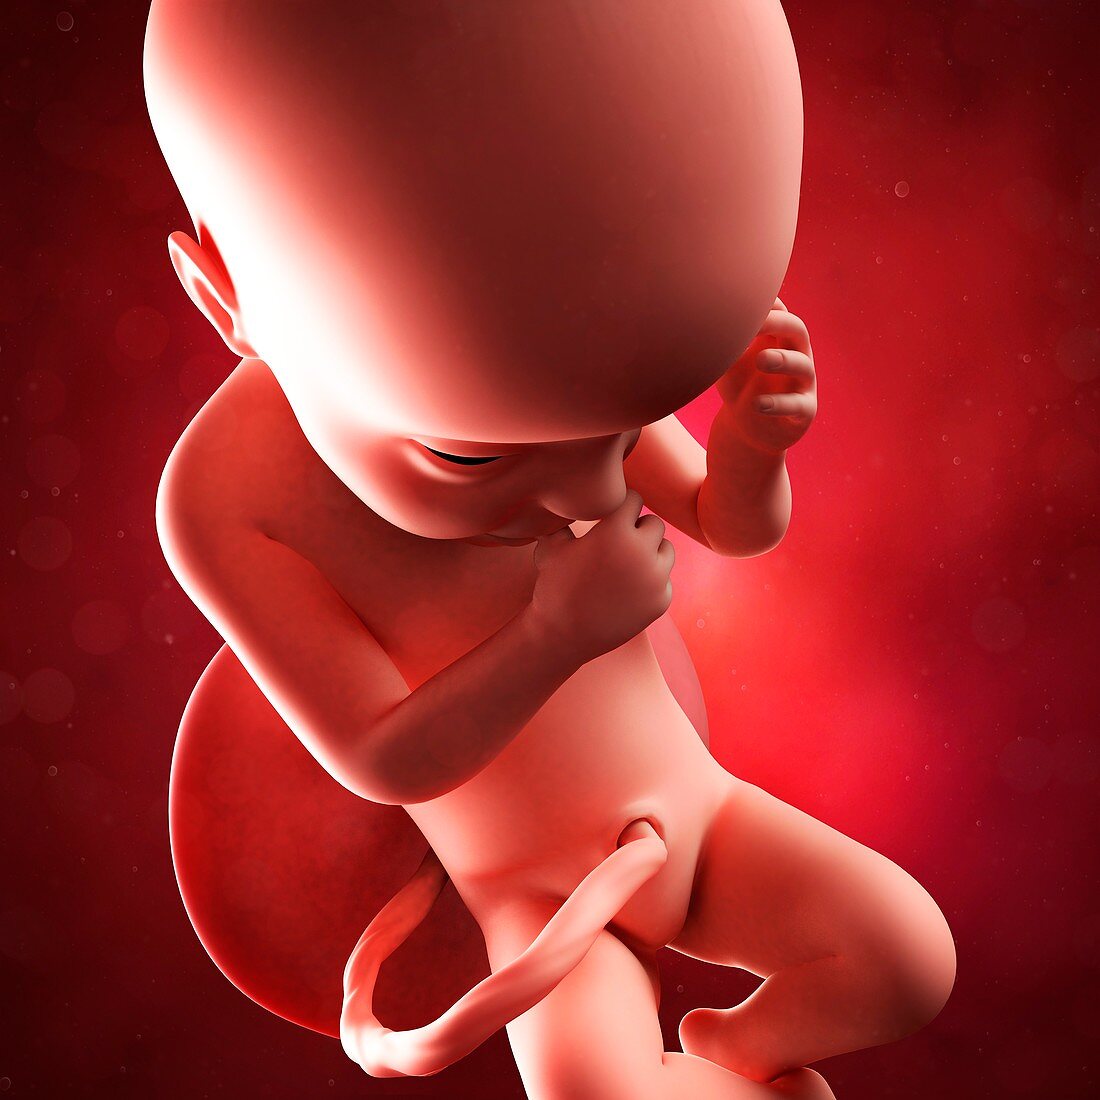 Foetus at 30 weeks,artwork